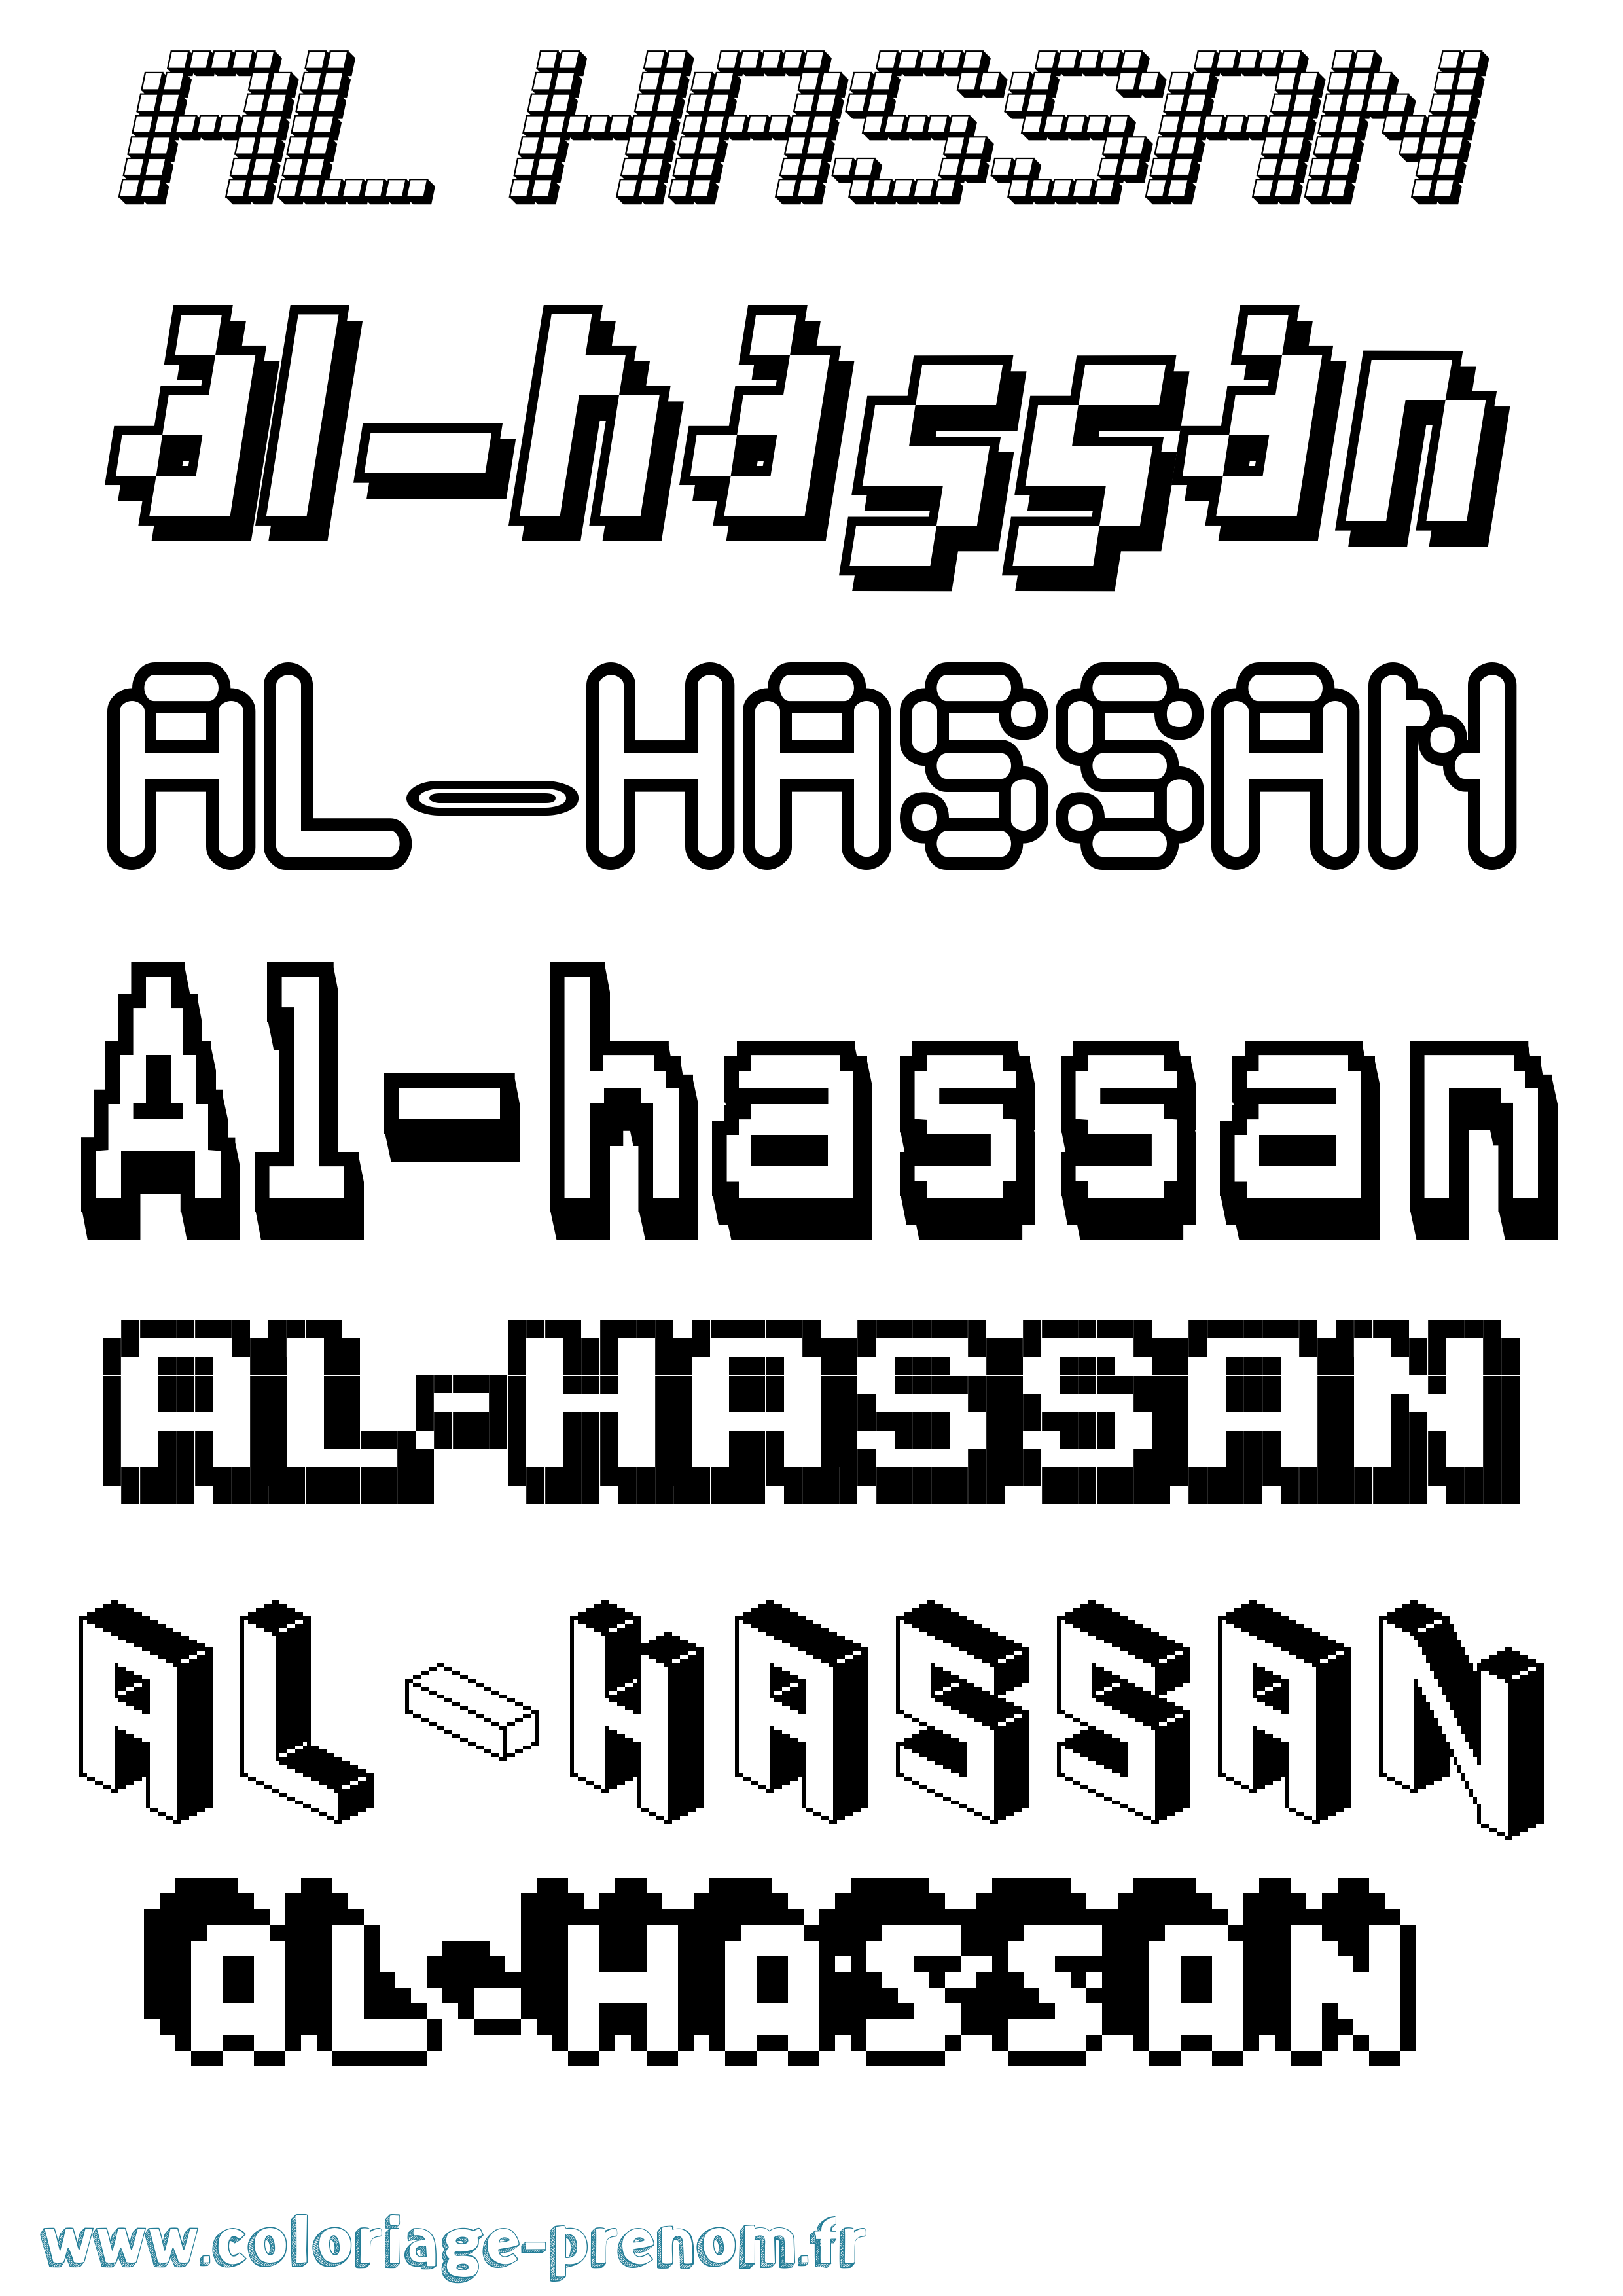 Coloriage prénom Al-Hassan Pixel